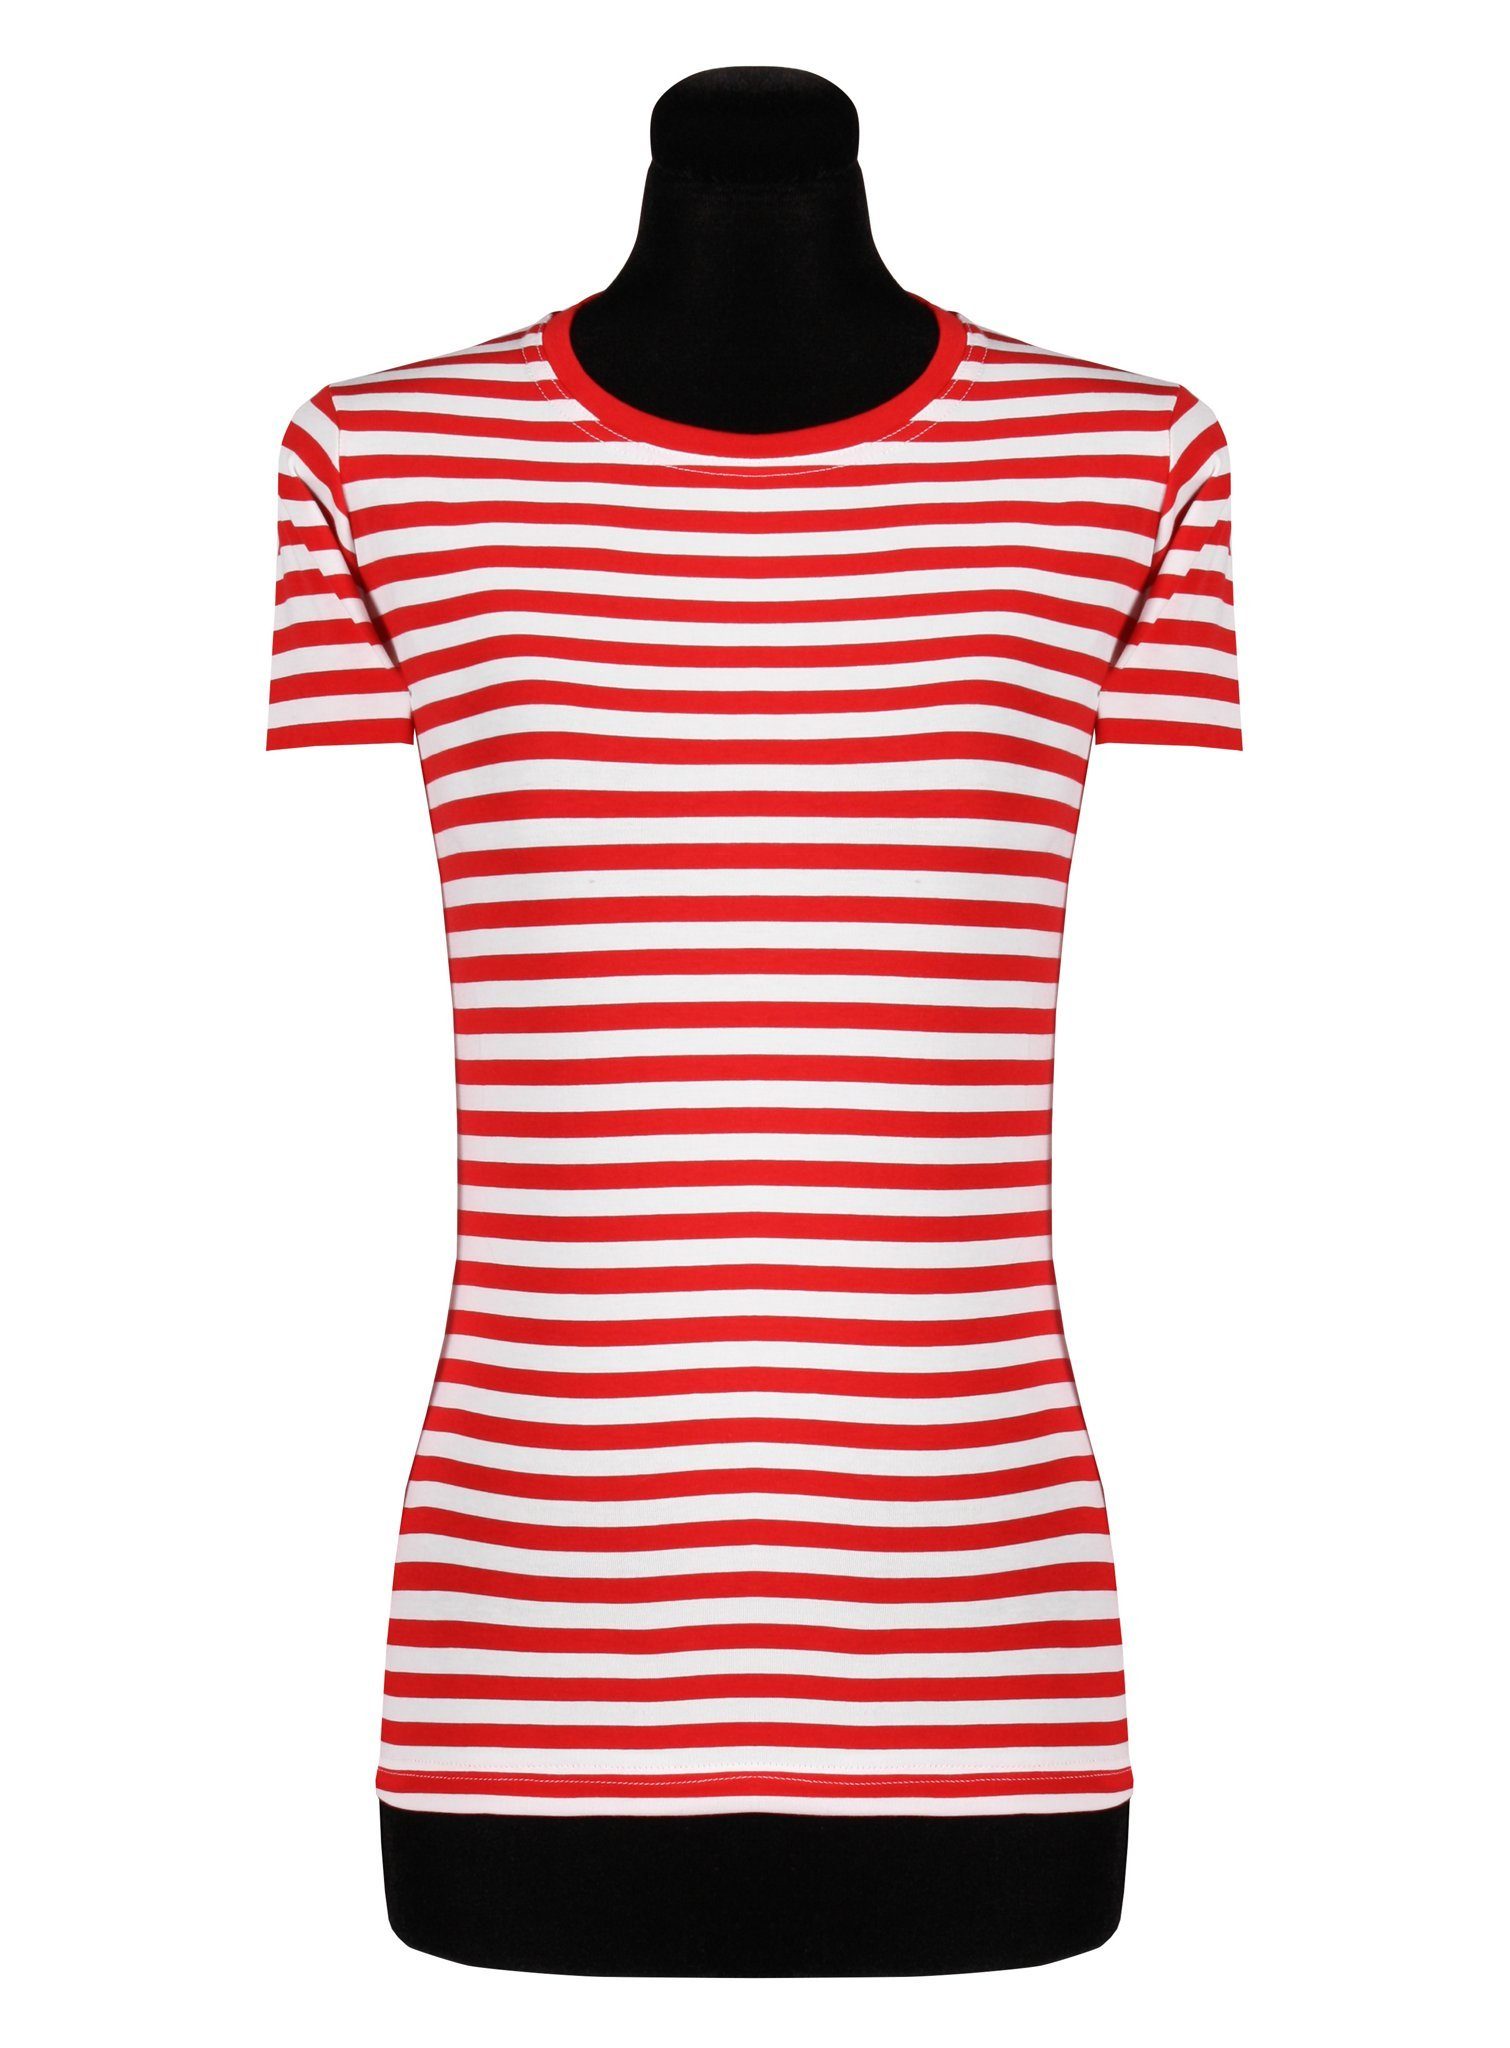 thetru und qualitativ Ringelshirt rot-weiß – alltagstaugli T-Shirt – Gestreiftes Damen kurzarm Shirt für Alltag Karneval entsprechend